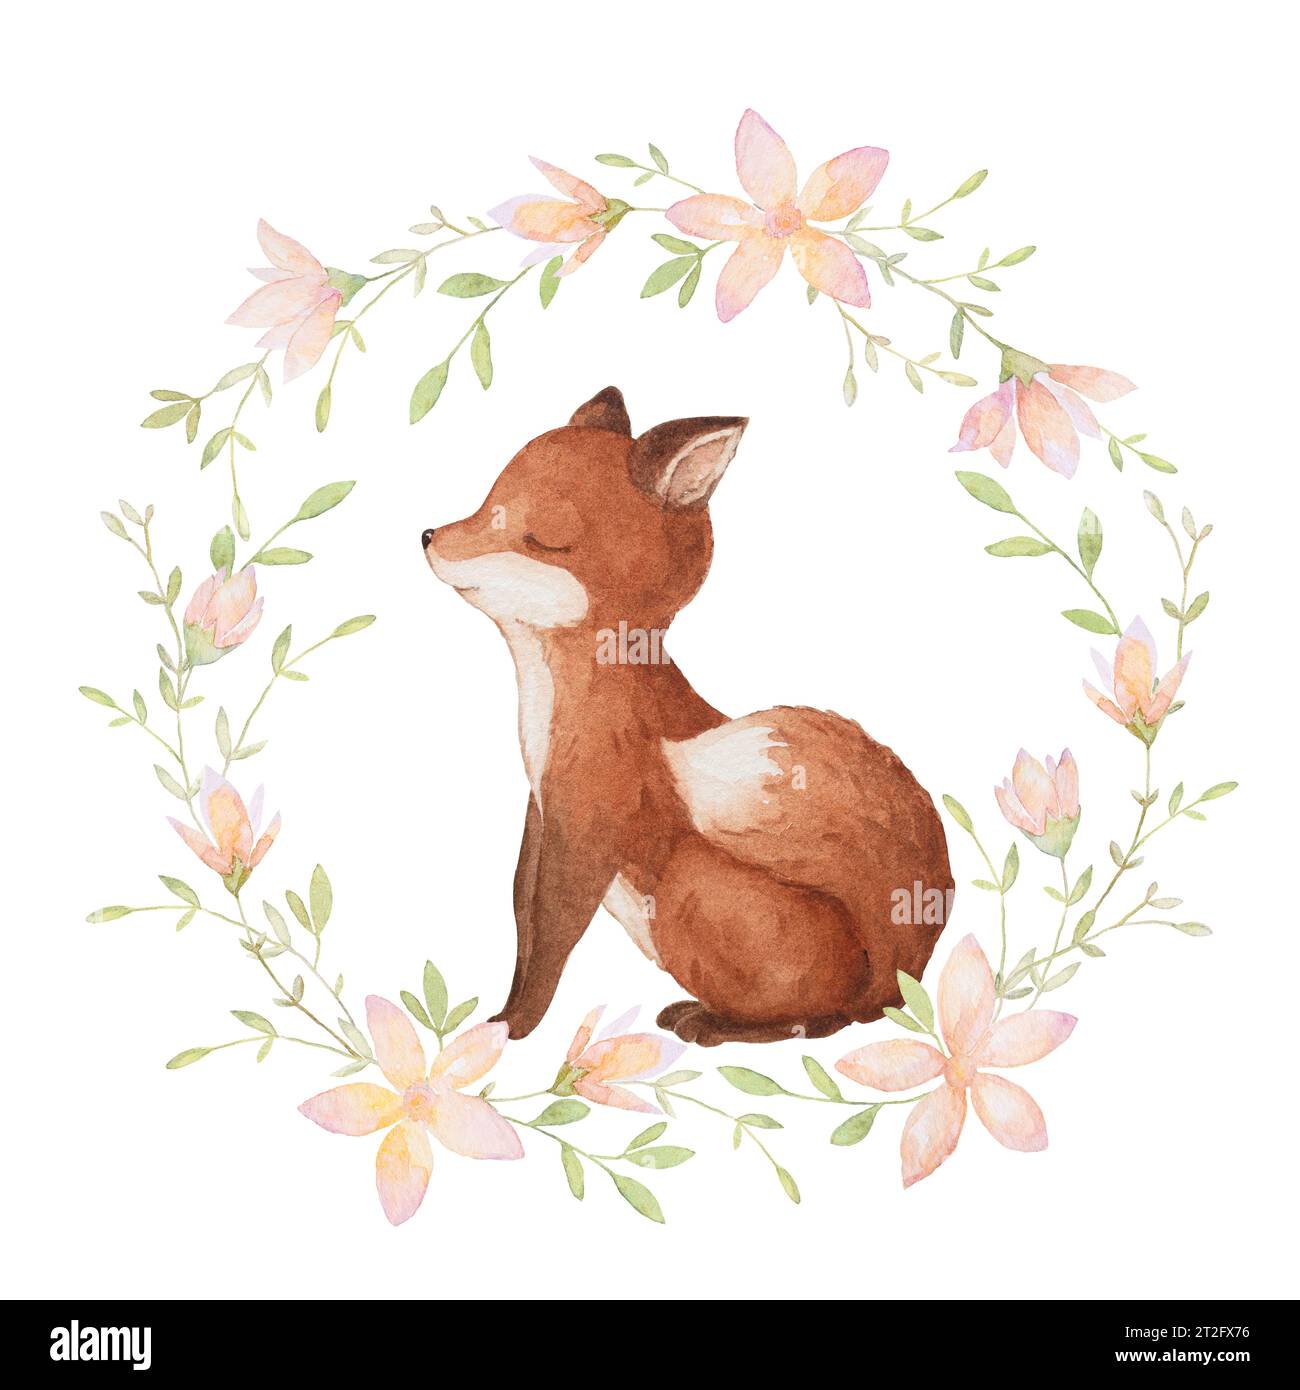 Aquarelle dormante Little Fox, clip Art de couronne florale, carte bébé Woodland, éléments aquarelle dessinés à la main Banque D'Images